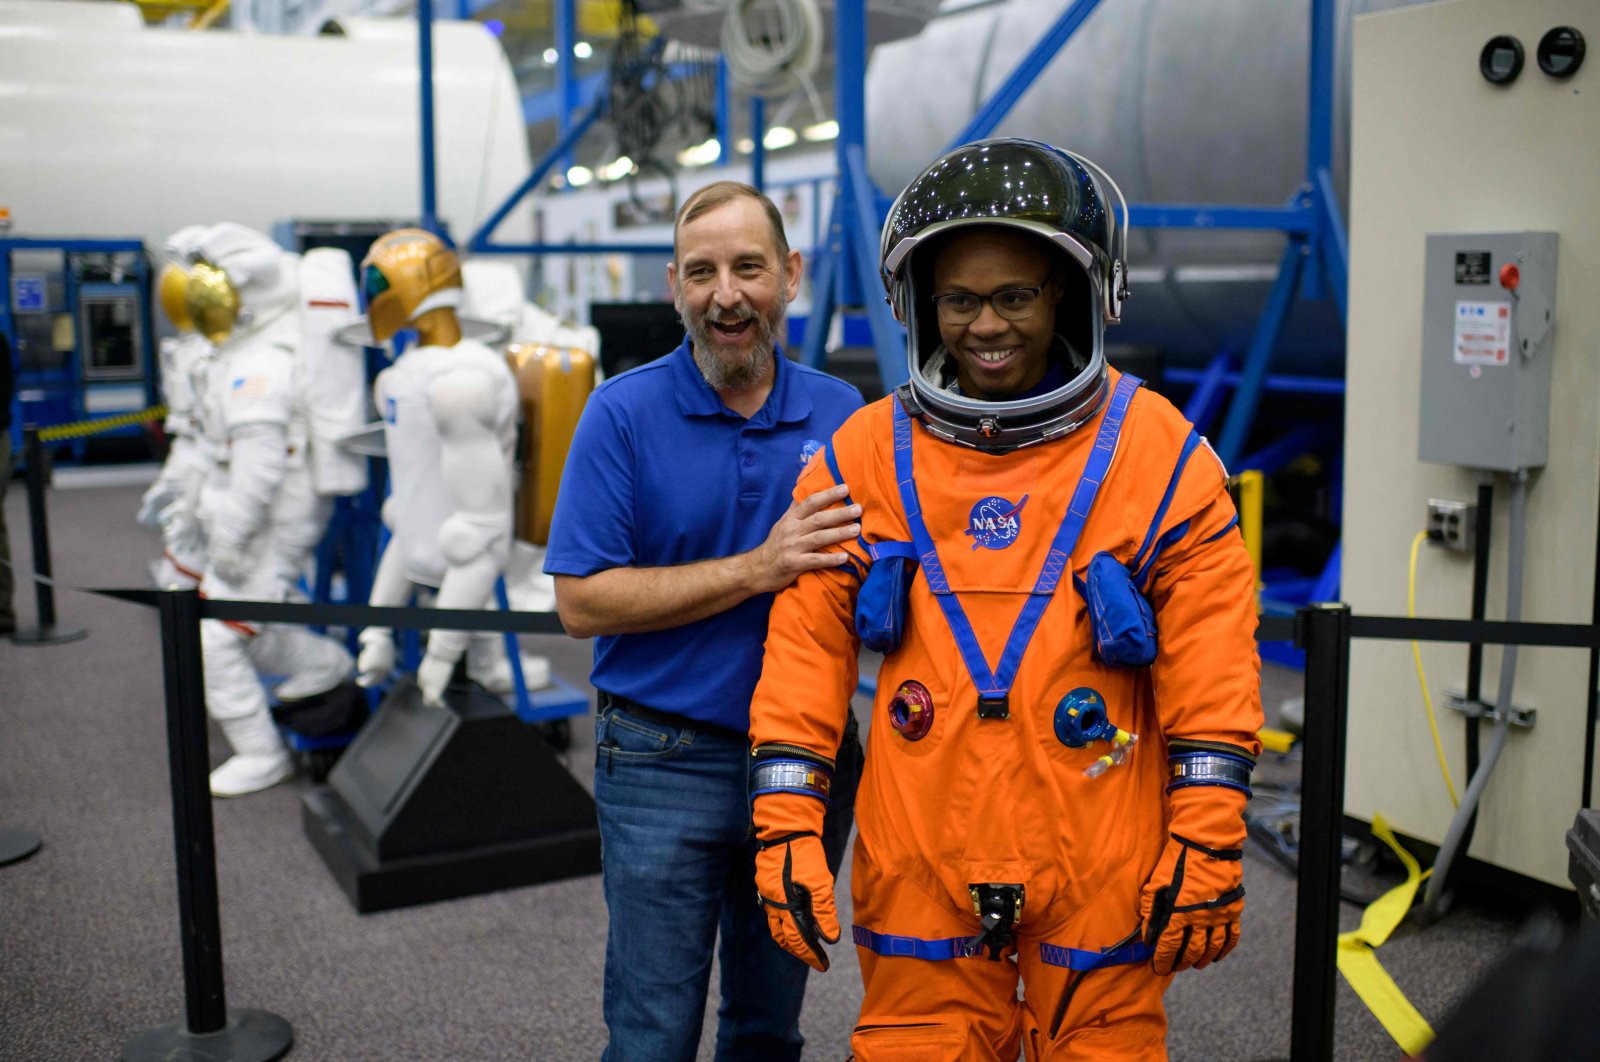 Siap lepas landas: Houston beramai-ramai untuk kembalinya NASA ke bulan